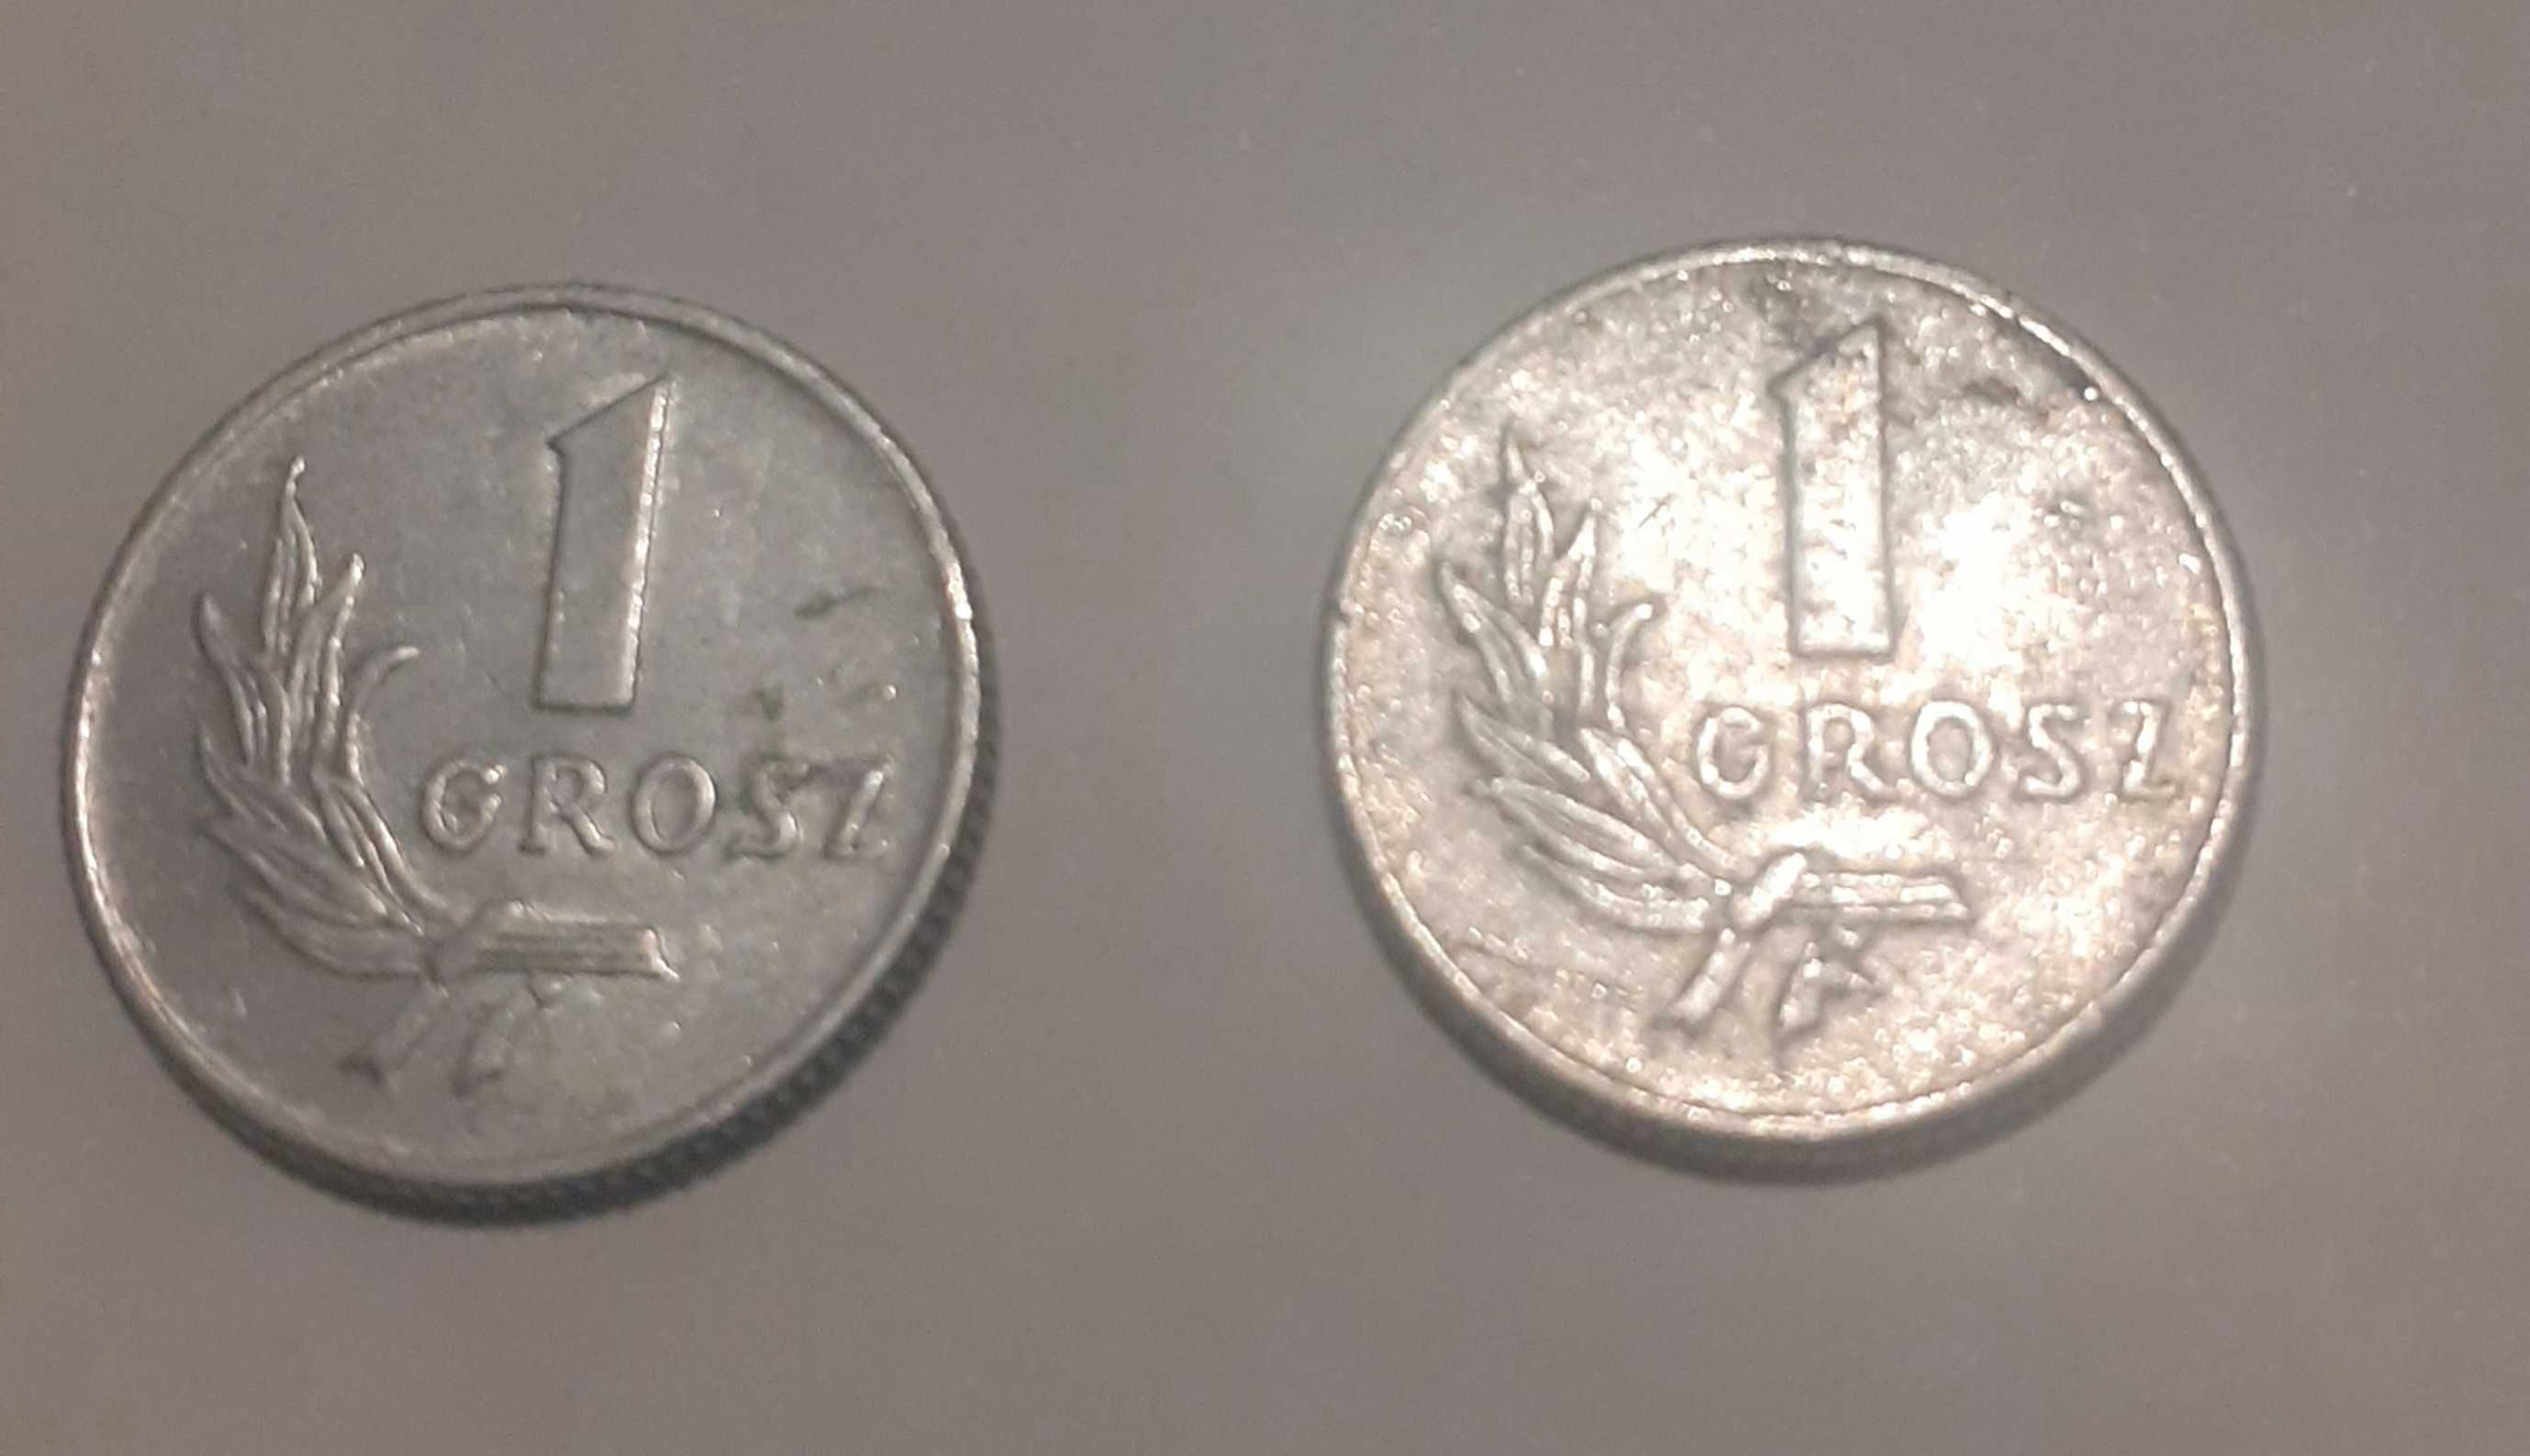 Monety 1 grosz polski z 1949 r.